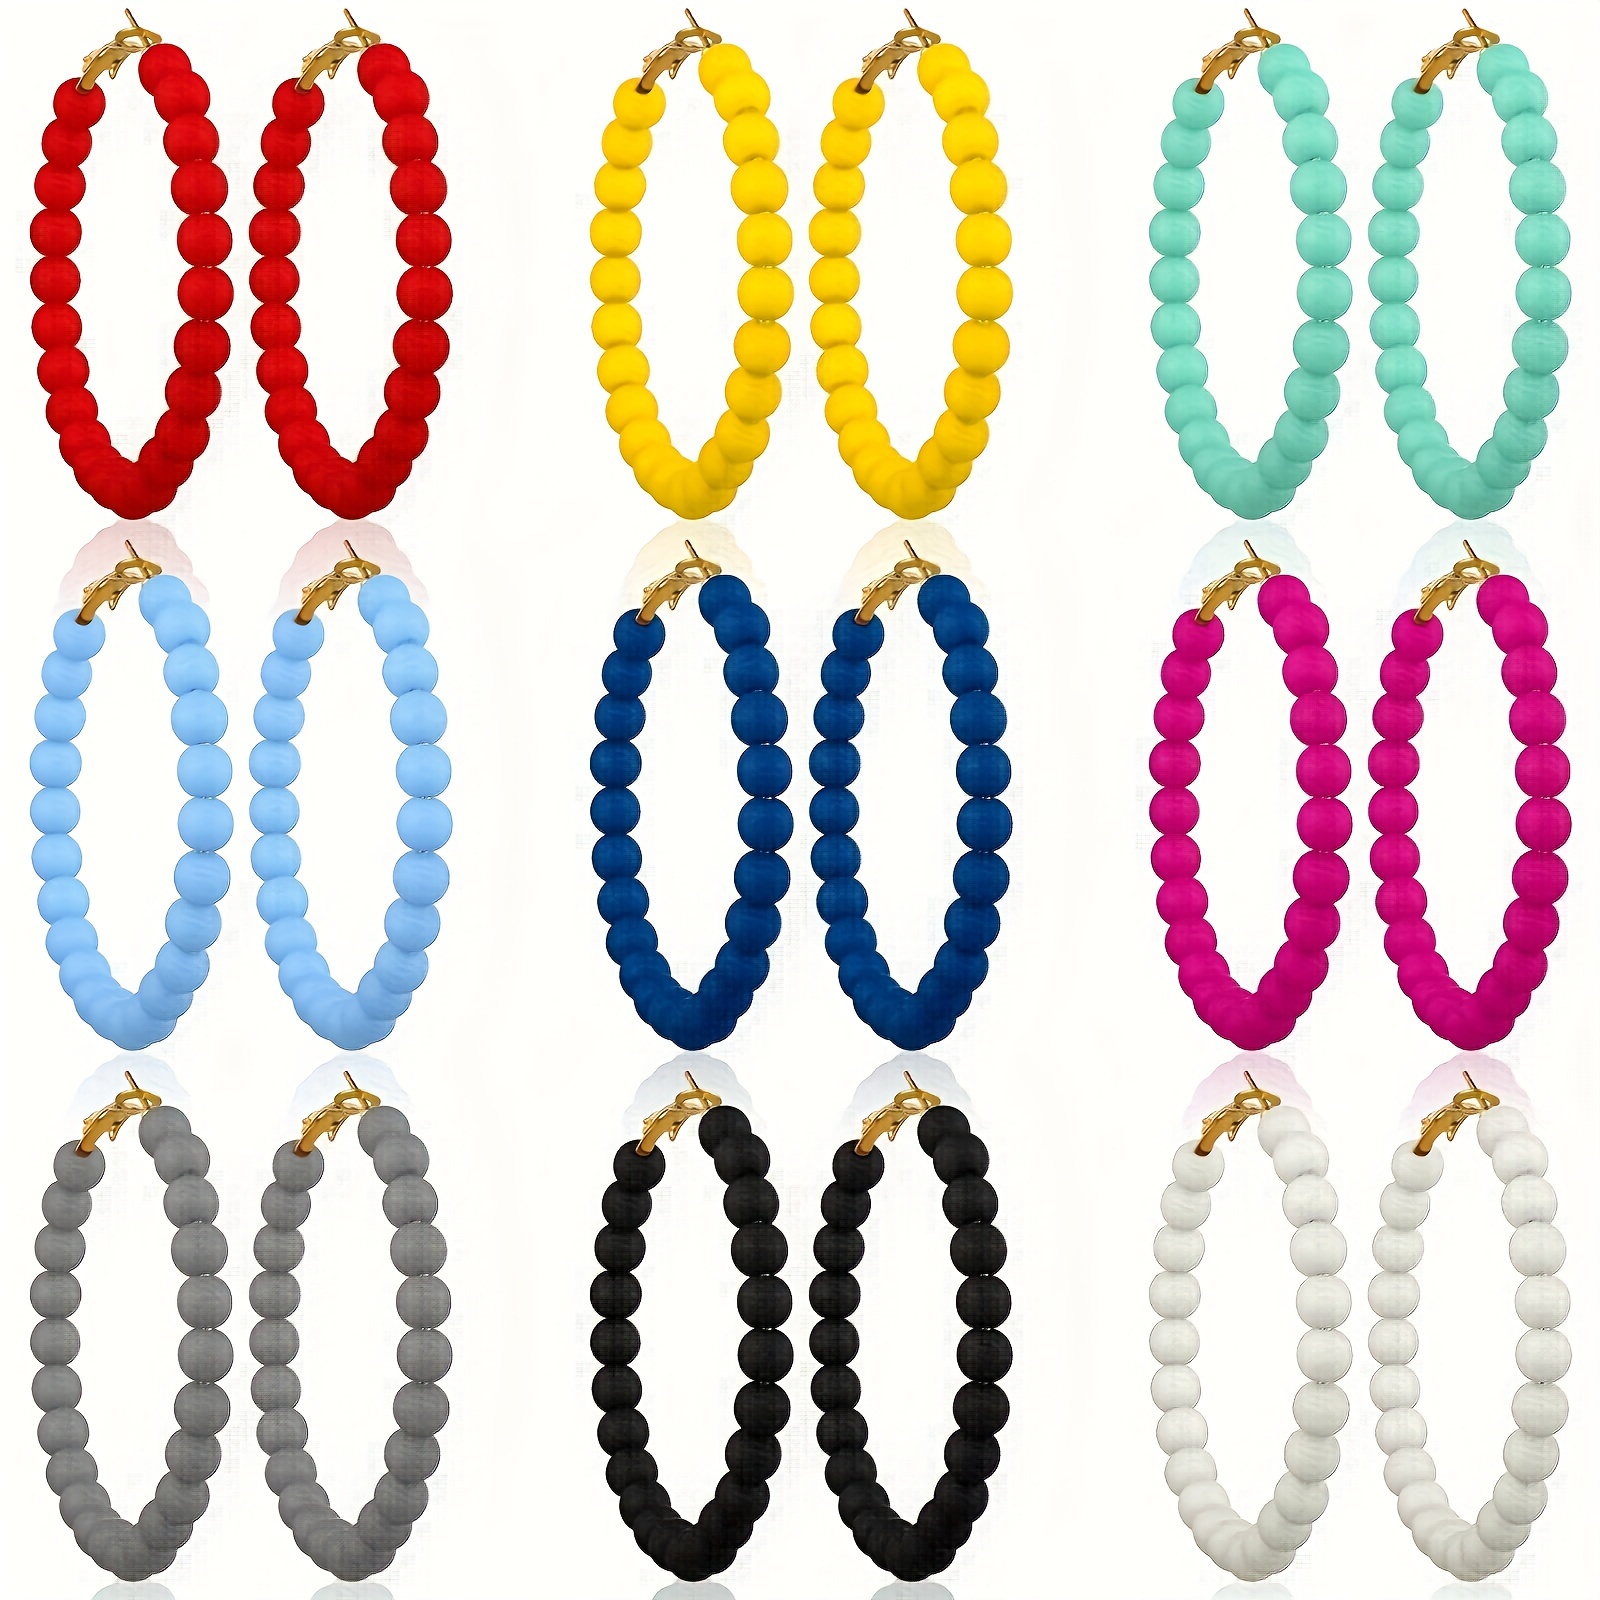 

9 Pairs Of Women's Beaded Hoop Earrings Bohemian Bead Earrings Mixed Colors Women Pendant Earrings